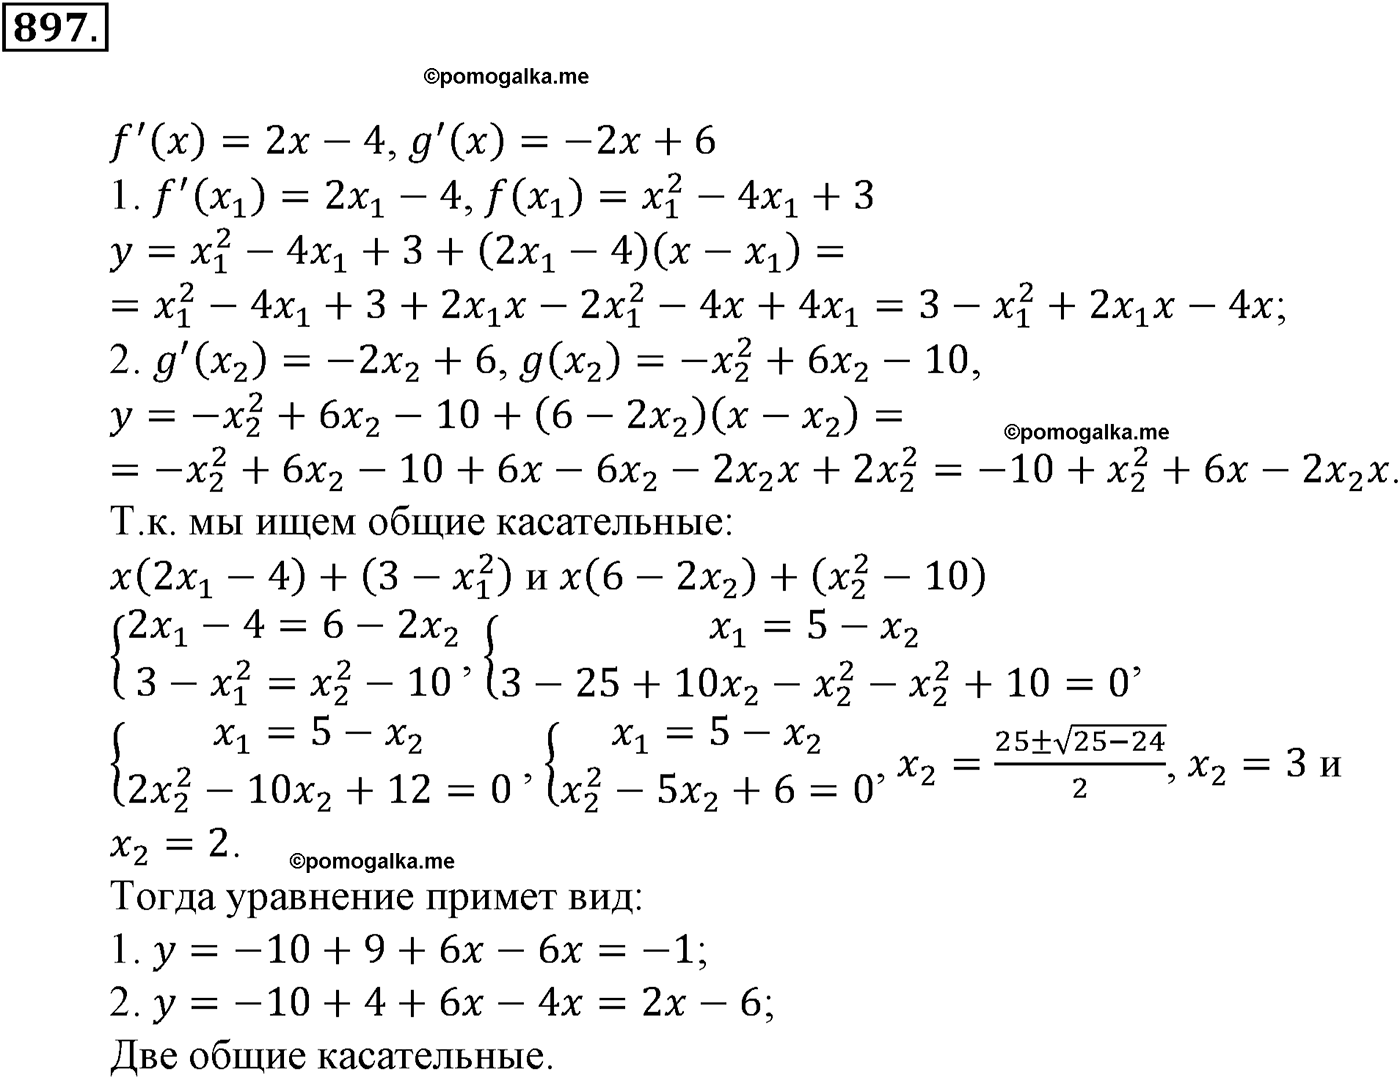 разбор задачи №897 по алгебре за 10-11 класс из учебника Алимова, Колягина